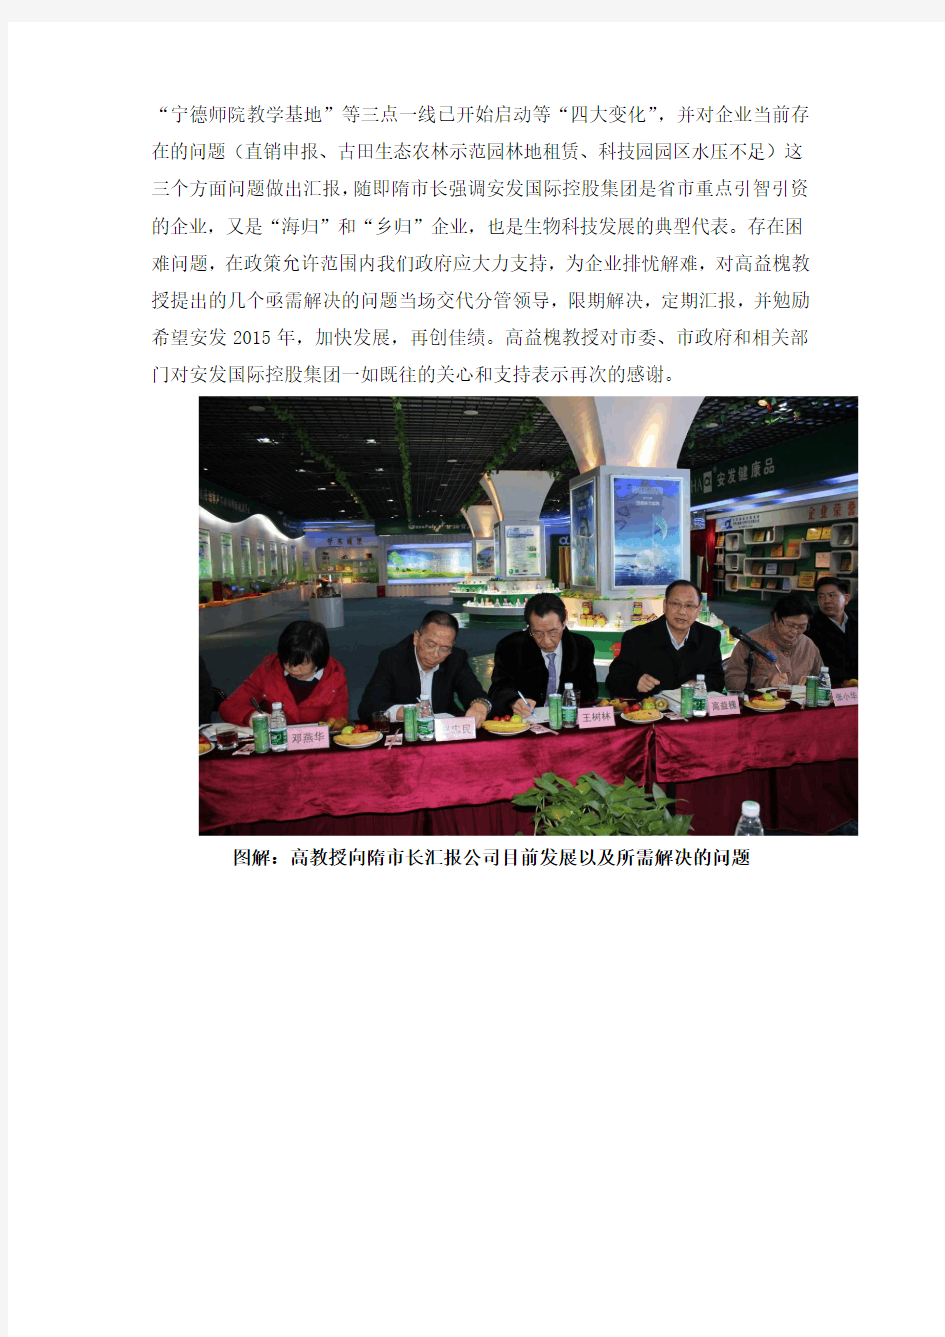 宁德市市长随军莅临安发国际控股集团调研(2014年1月21日)